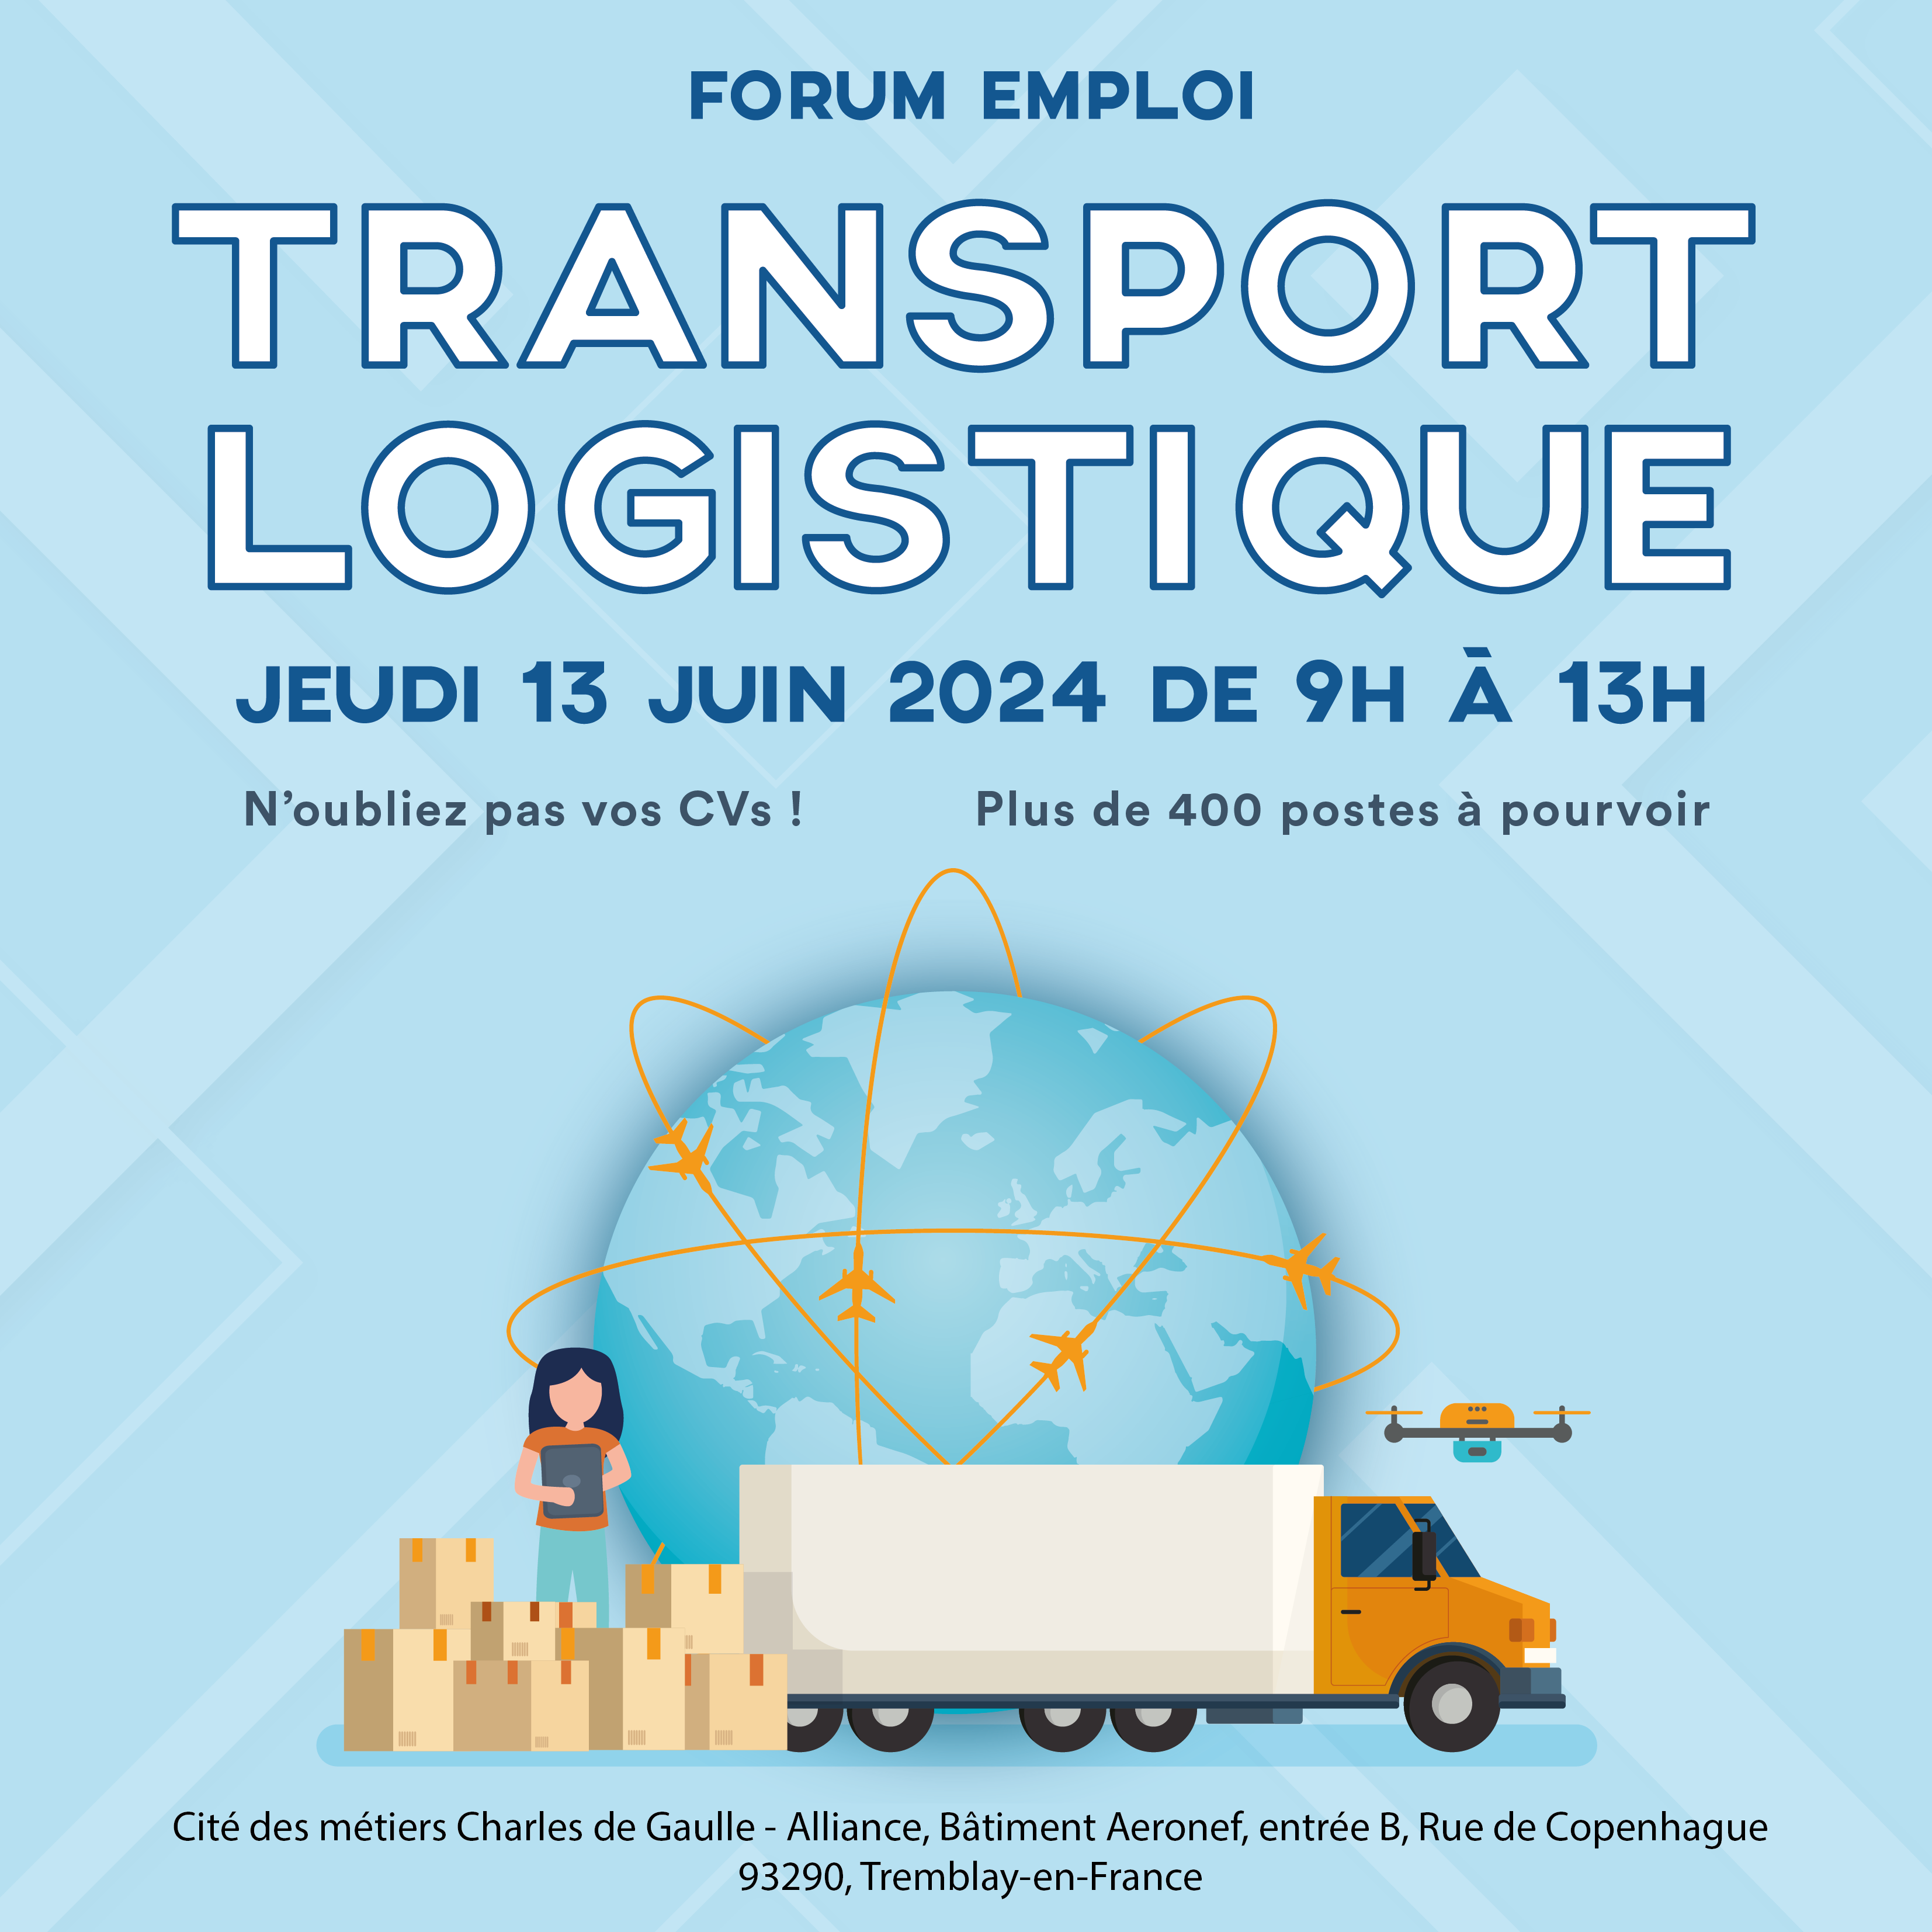 Le forum emploi Transport-Logistique